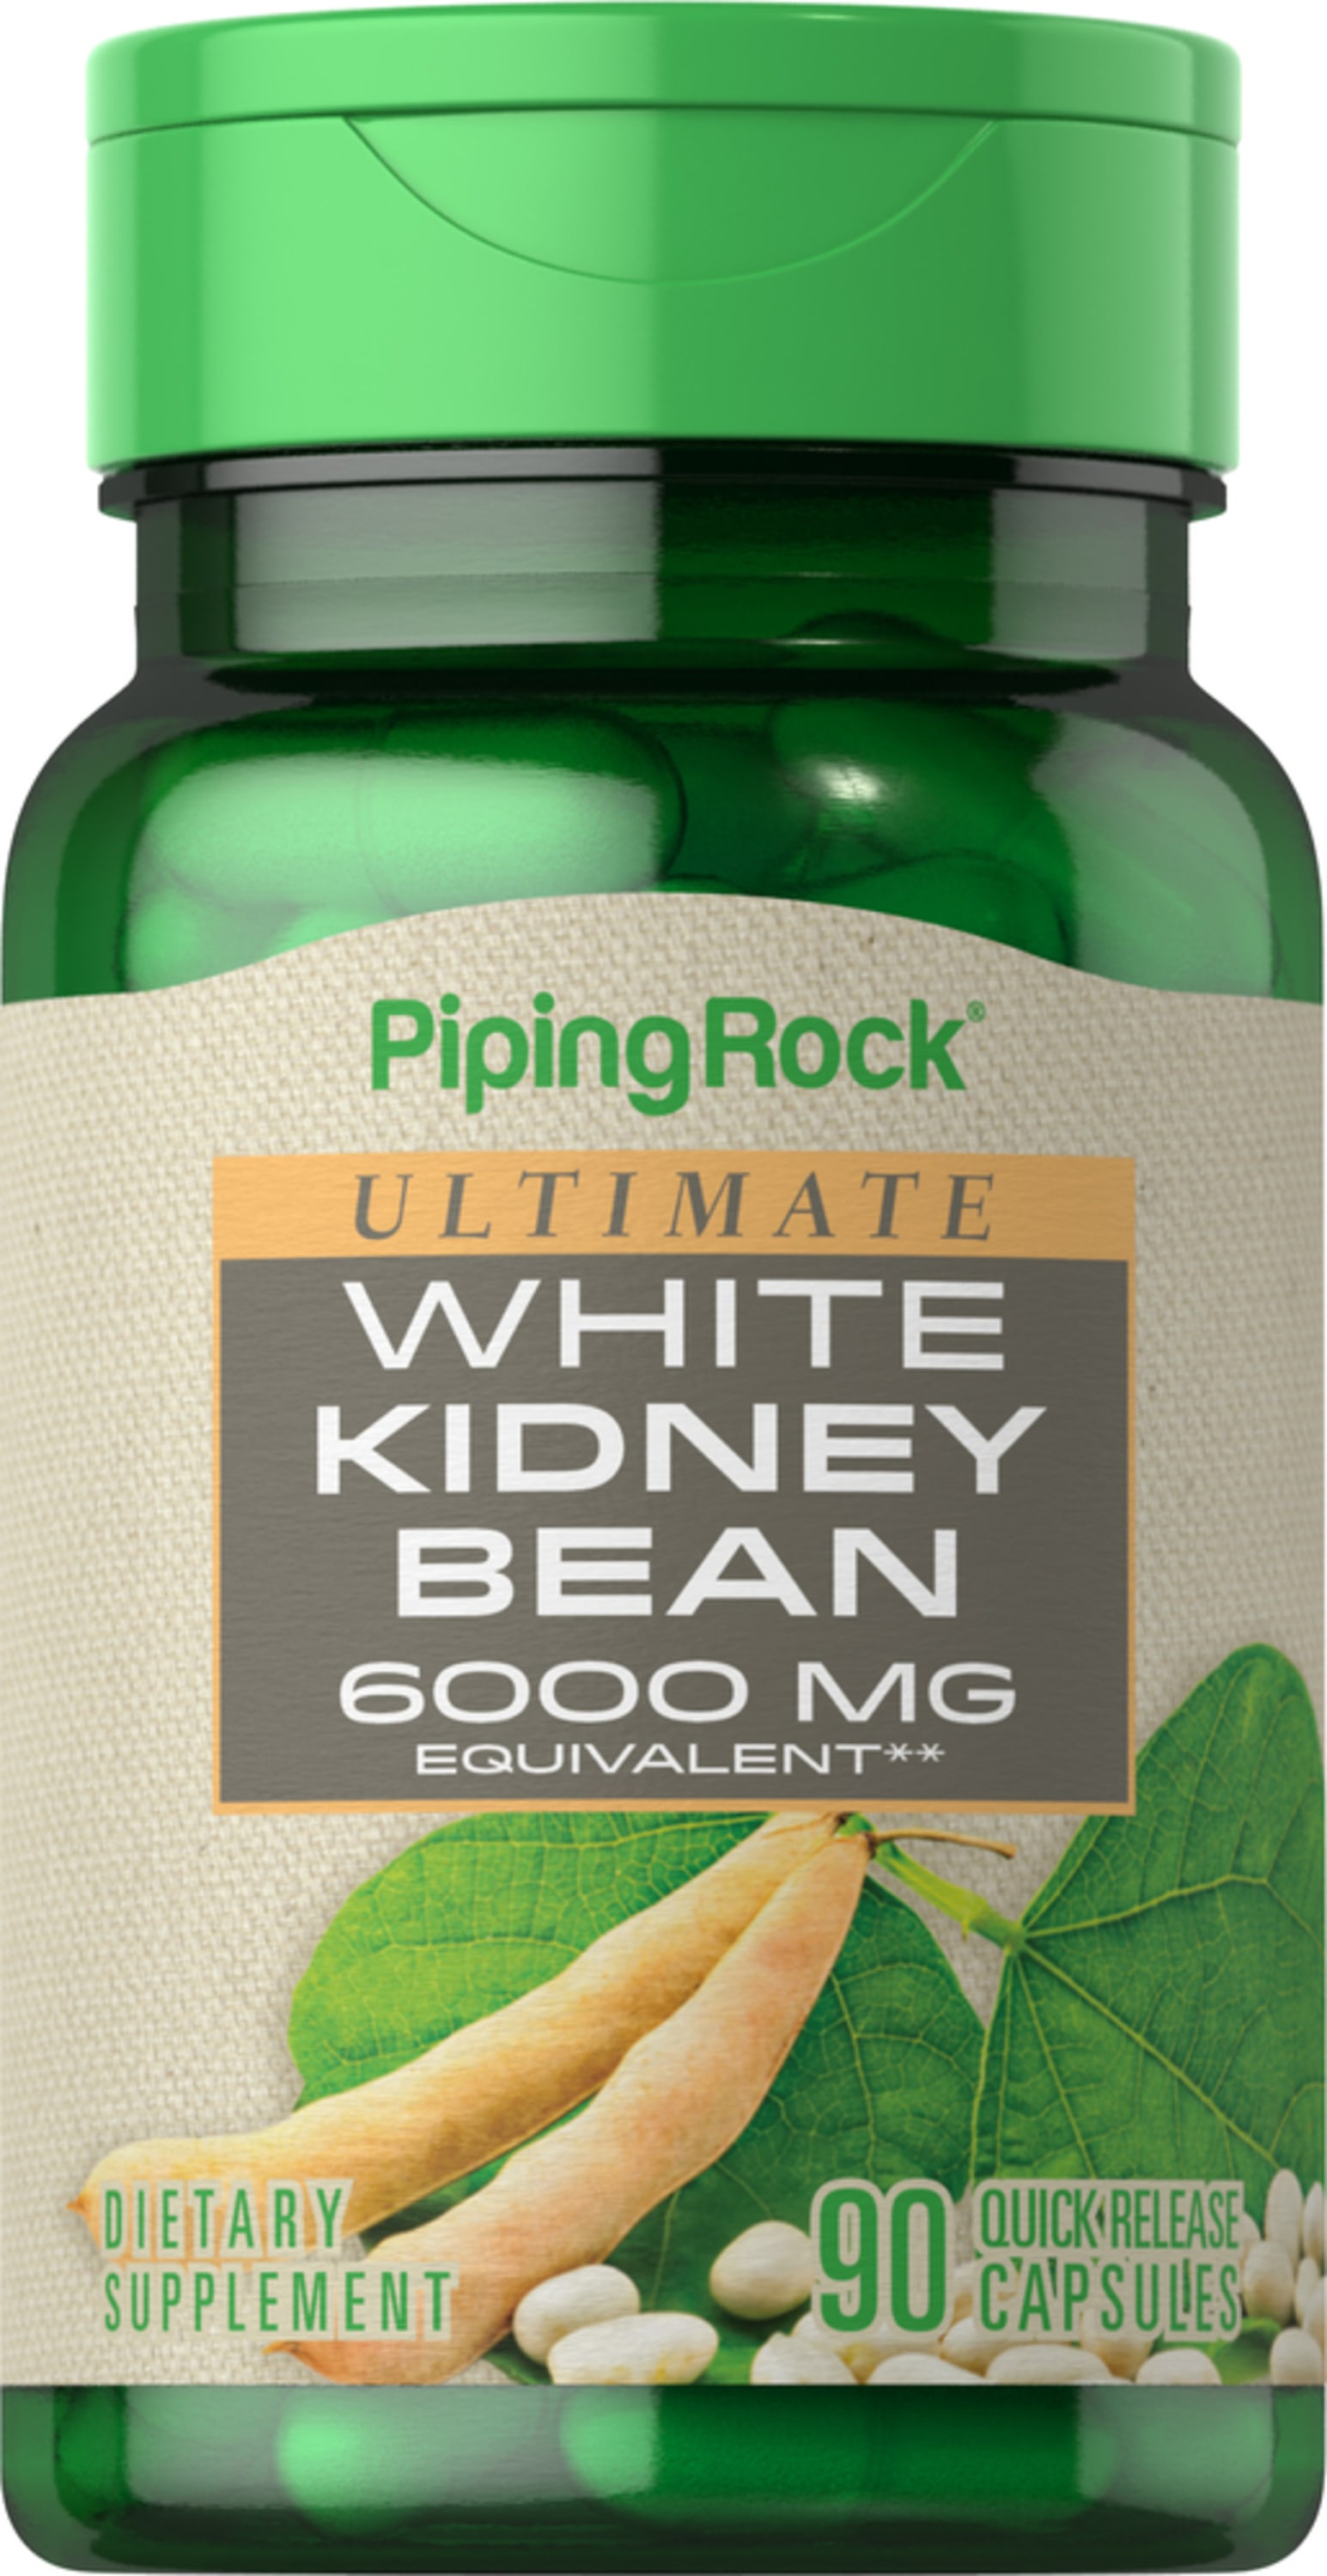 White Kidney Bean Extract (Extracto de Frijol Blanco) - 60